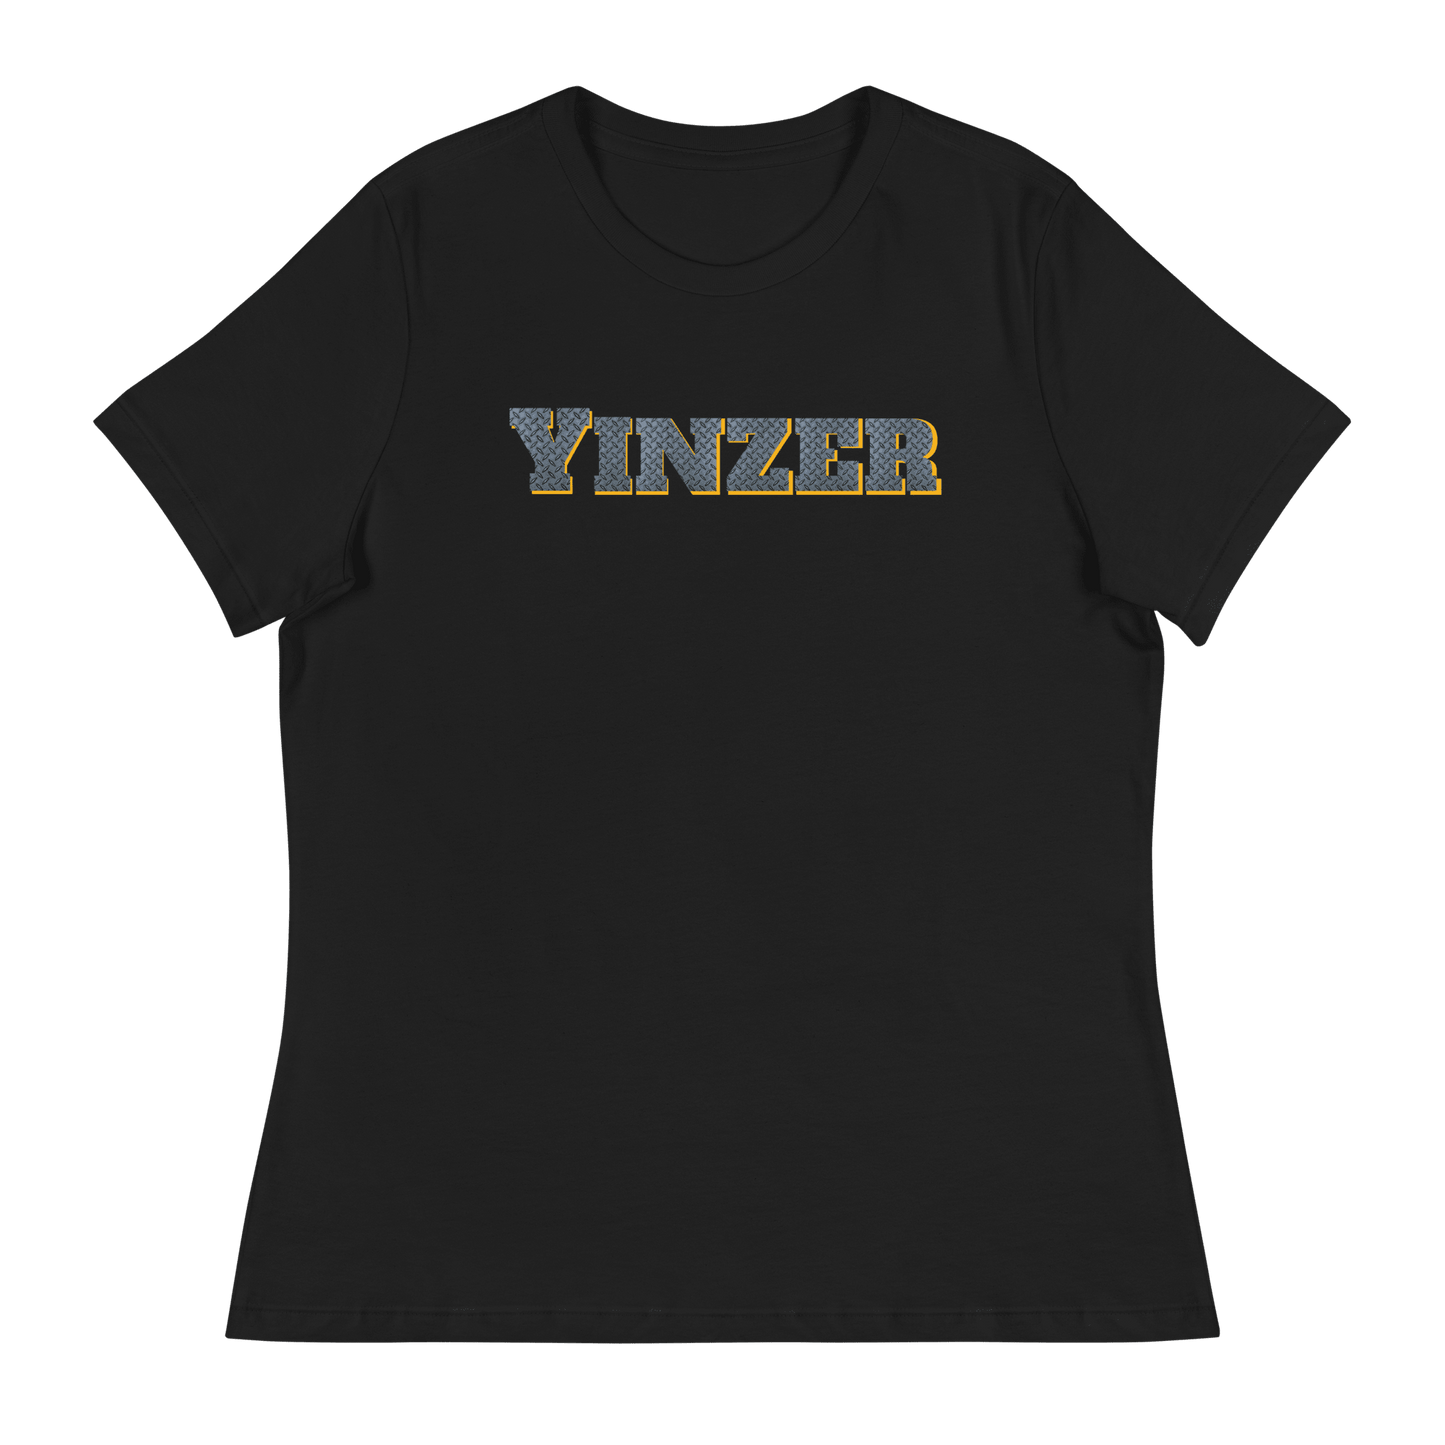 Yinzer Women's T-Shirt Yinzergear Black S 